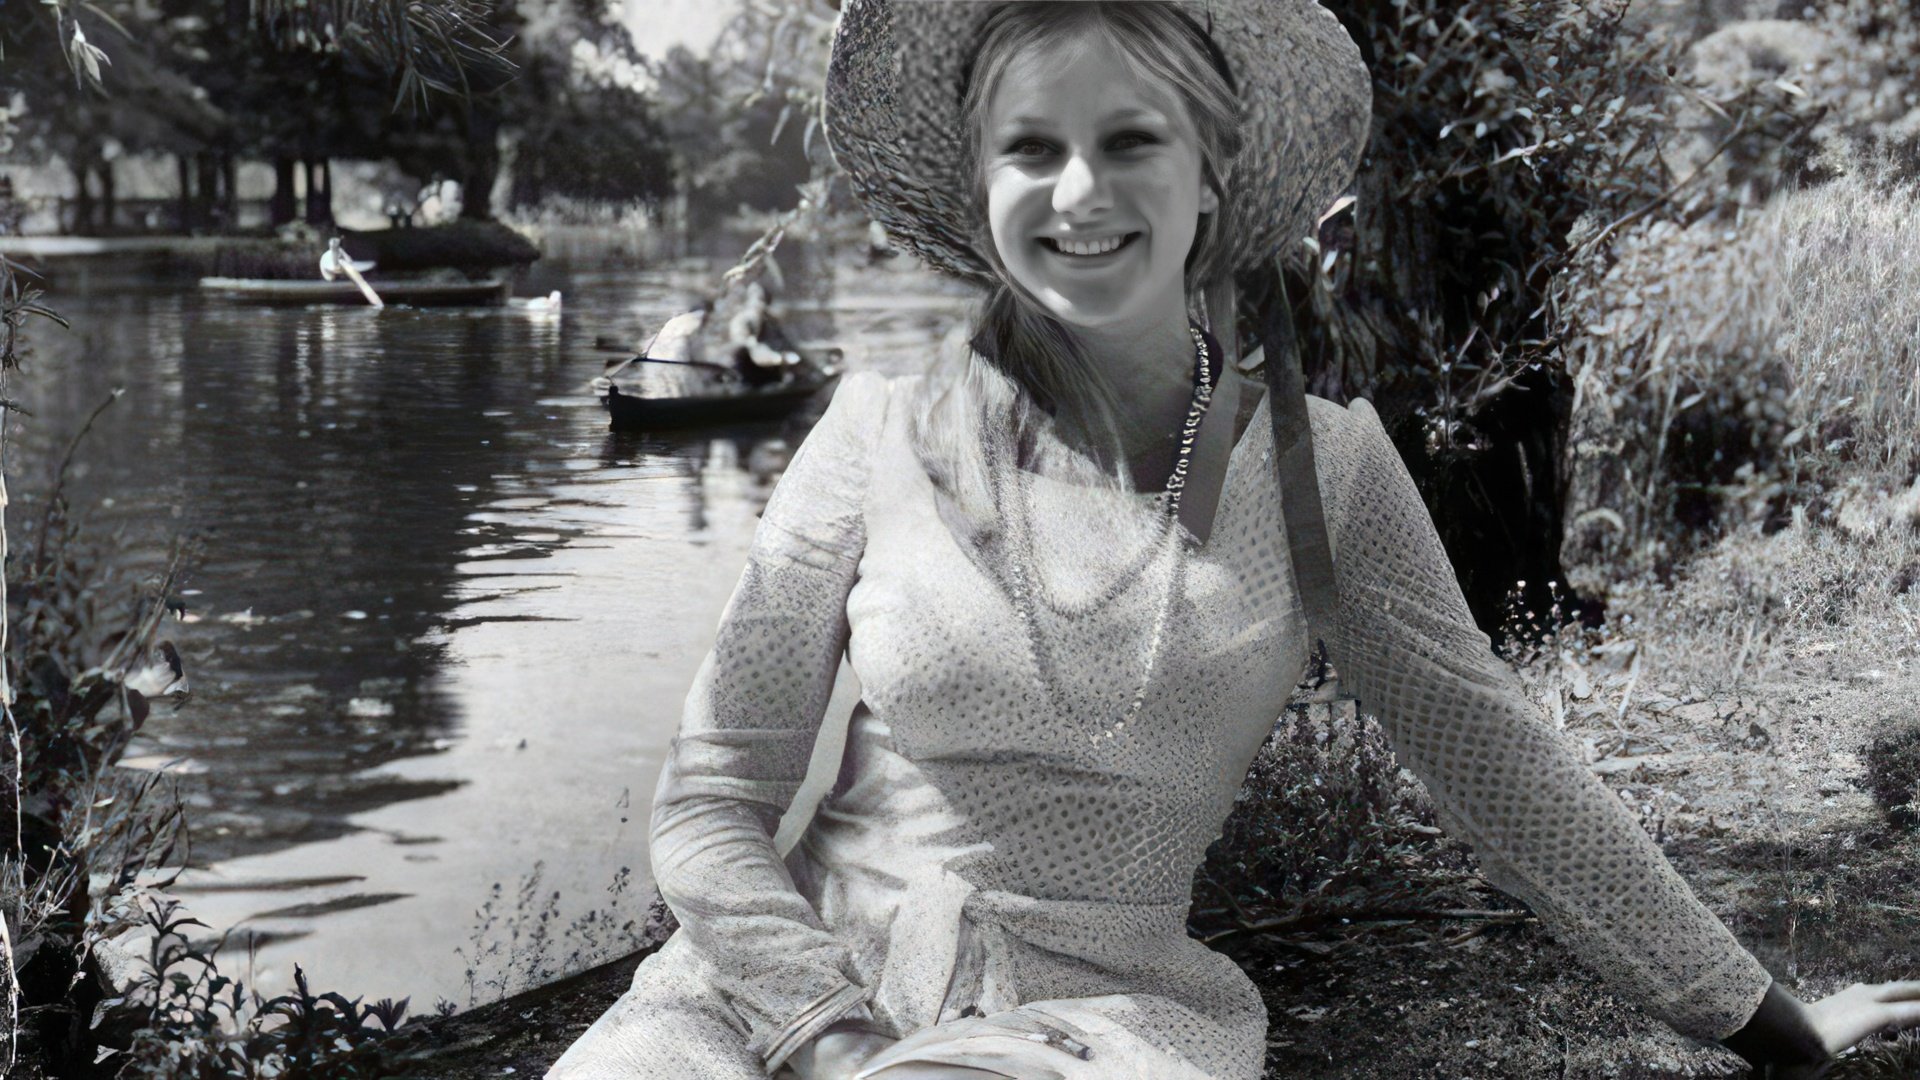 Young Helen Mirren